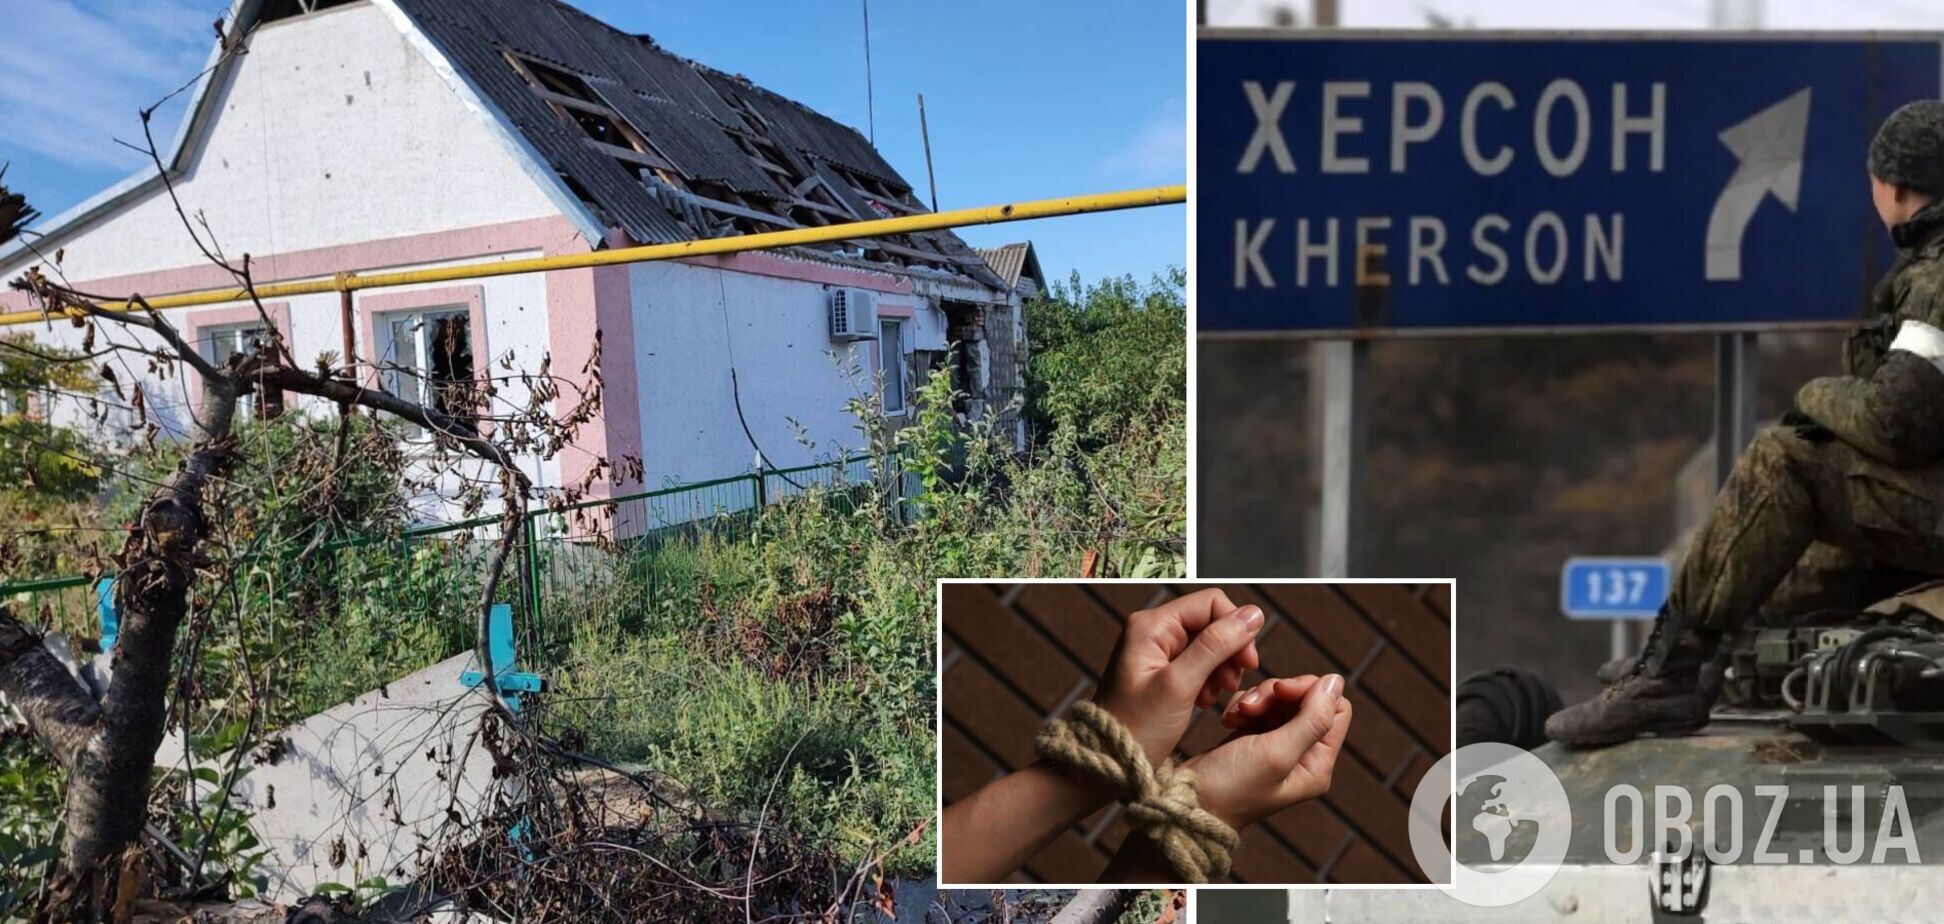 На Херсонщине оккупанты избили мужчину за проукраинскую позицию: его дом взорвали, а жену похитили